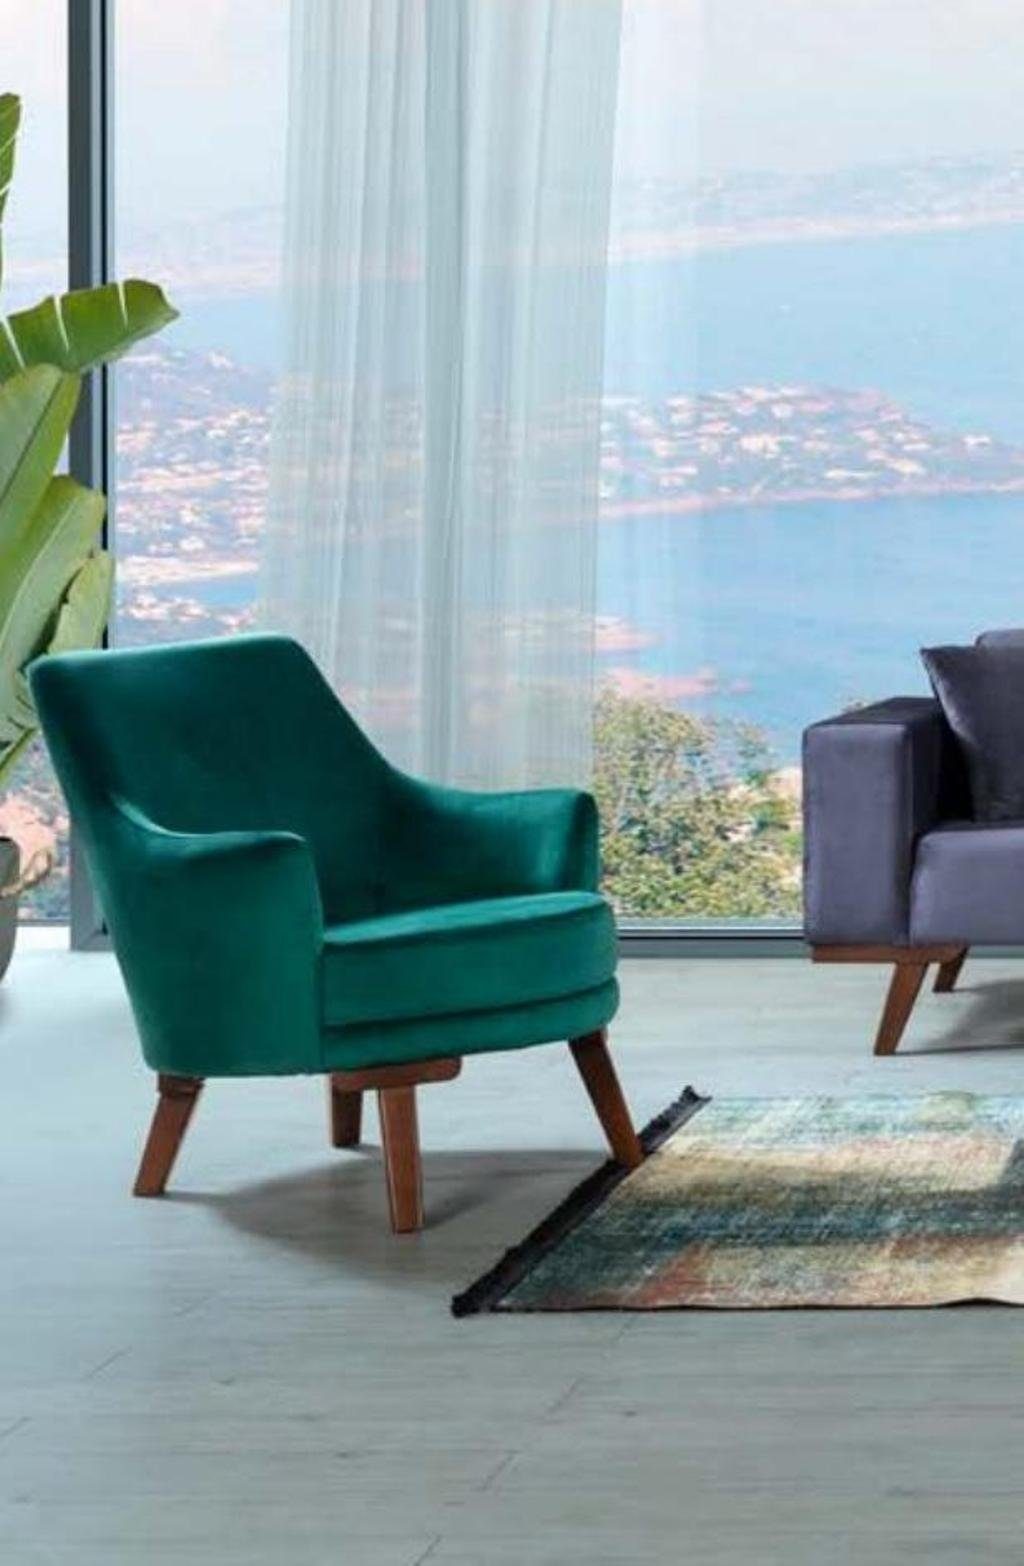 JVmoebel Sofa Wohnzimmer Stil Sofagarnitur Möbel in Möbel Made Europe Couch Sofa 3+3+1